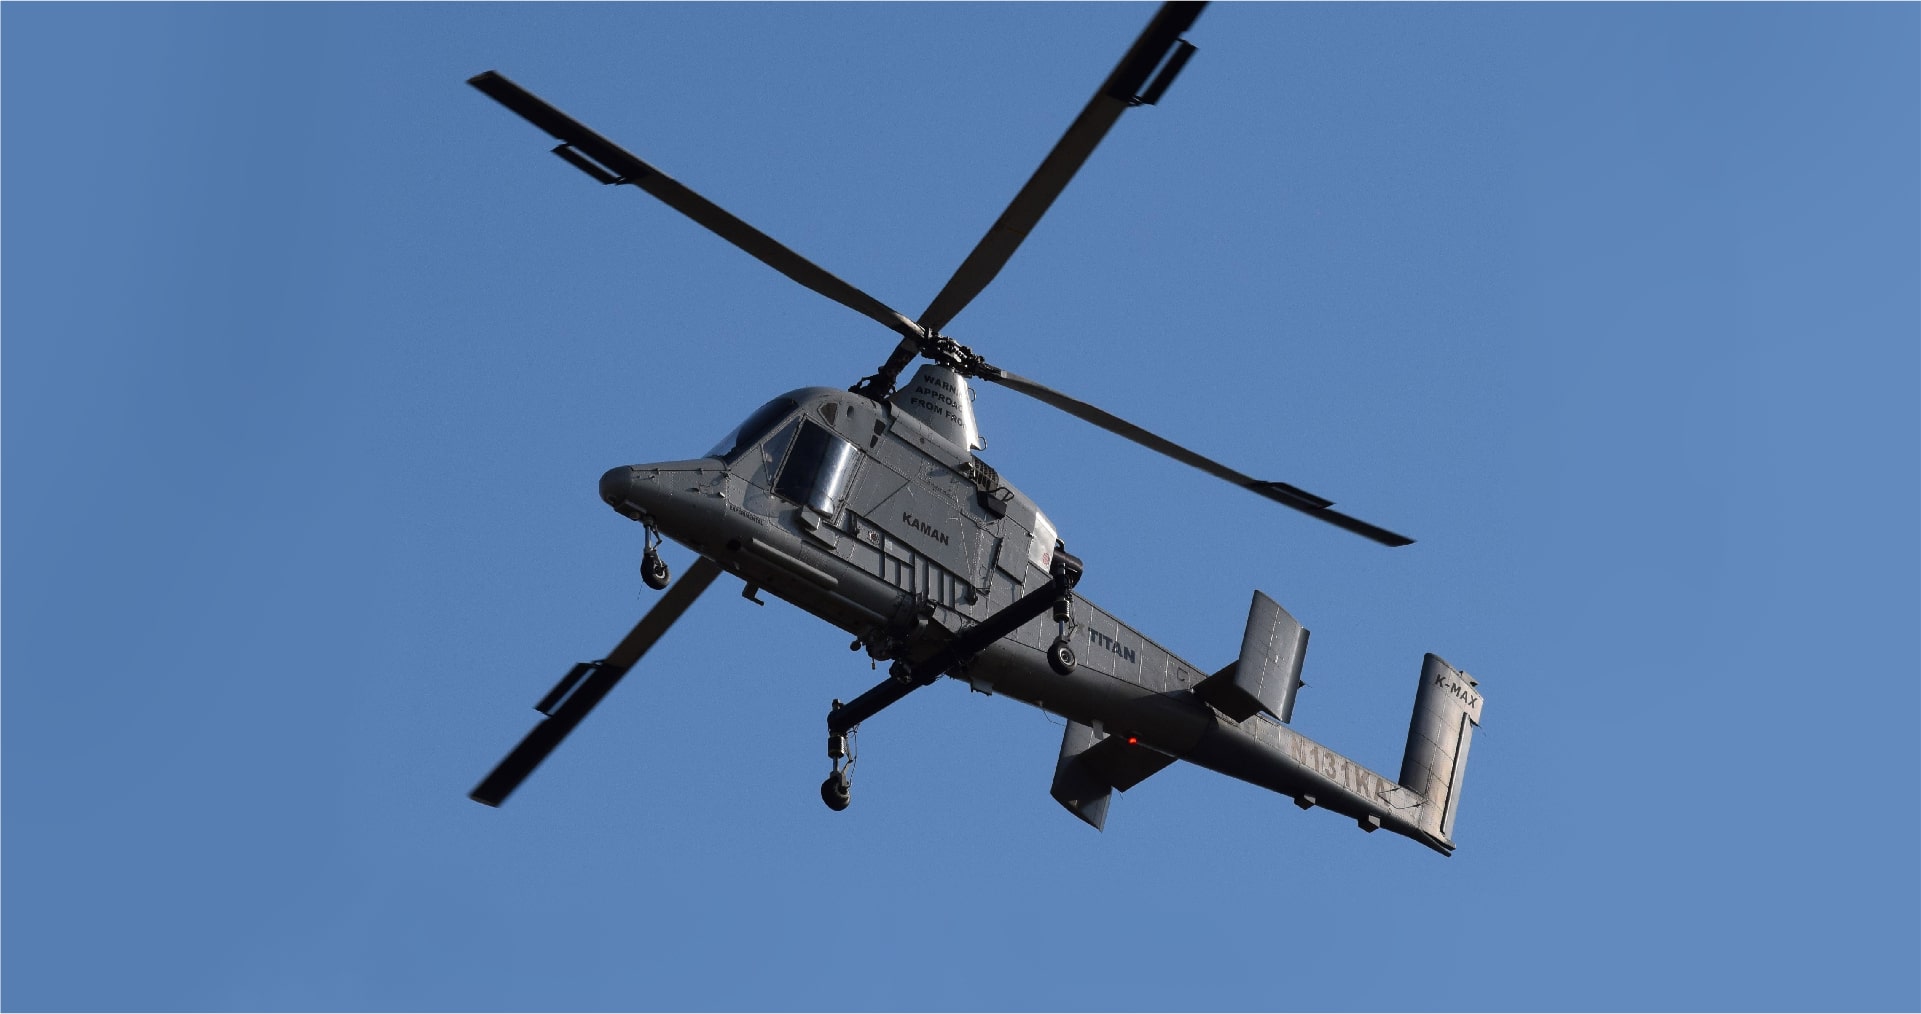 Η επανάσταση των delivery drones ξεκινάει με το ελικόπτερο ΤΙΤΑΝ